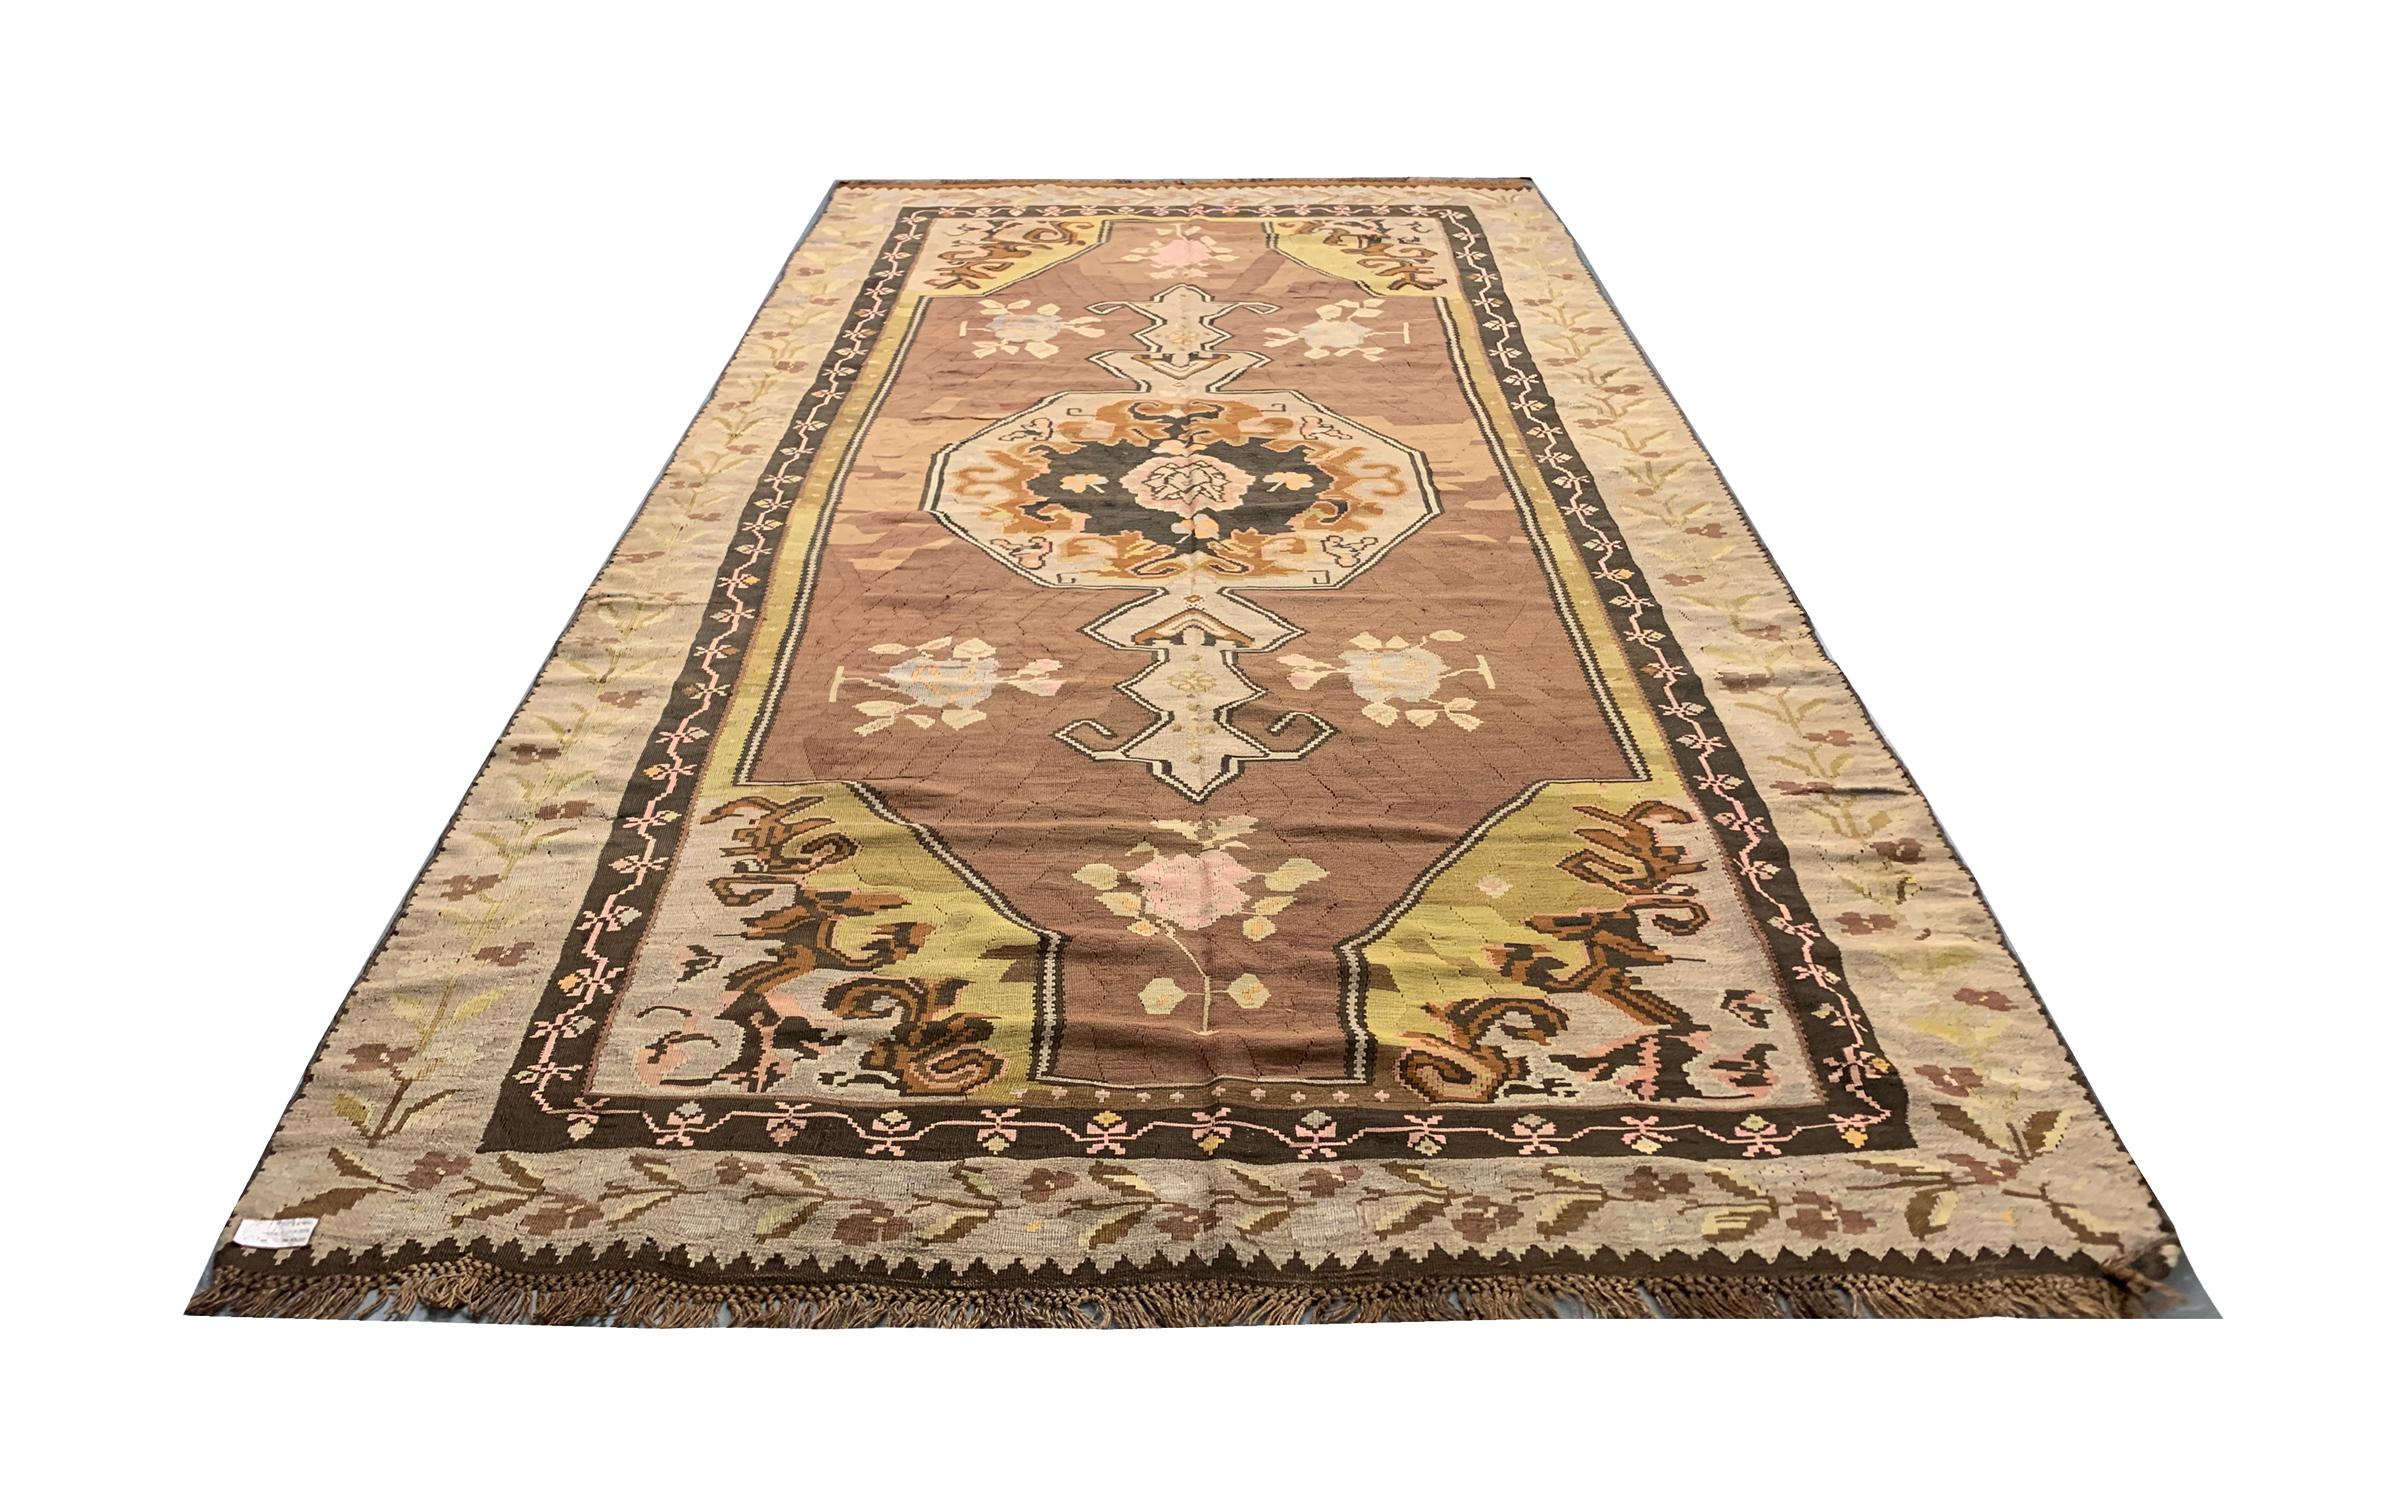 Dieser elegante, handgewebte Kelim ist ein hervorragendes Beispiel für einen kaukasischen Karabagh-Kilim-Teppich. Gewebt mit einem kühnen geometrischen Muster mit Akzenten in Braun, Beige, Creme und Grün. Mit floralen und geometrischen Mustern.